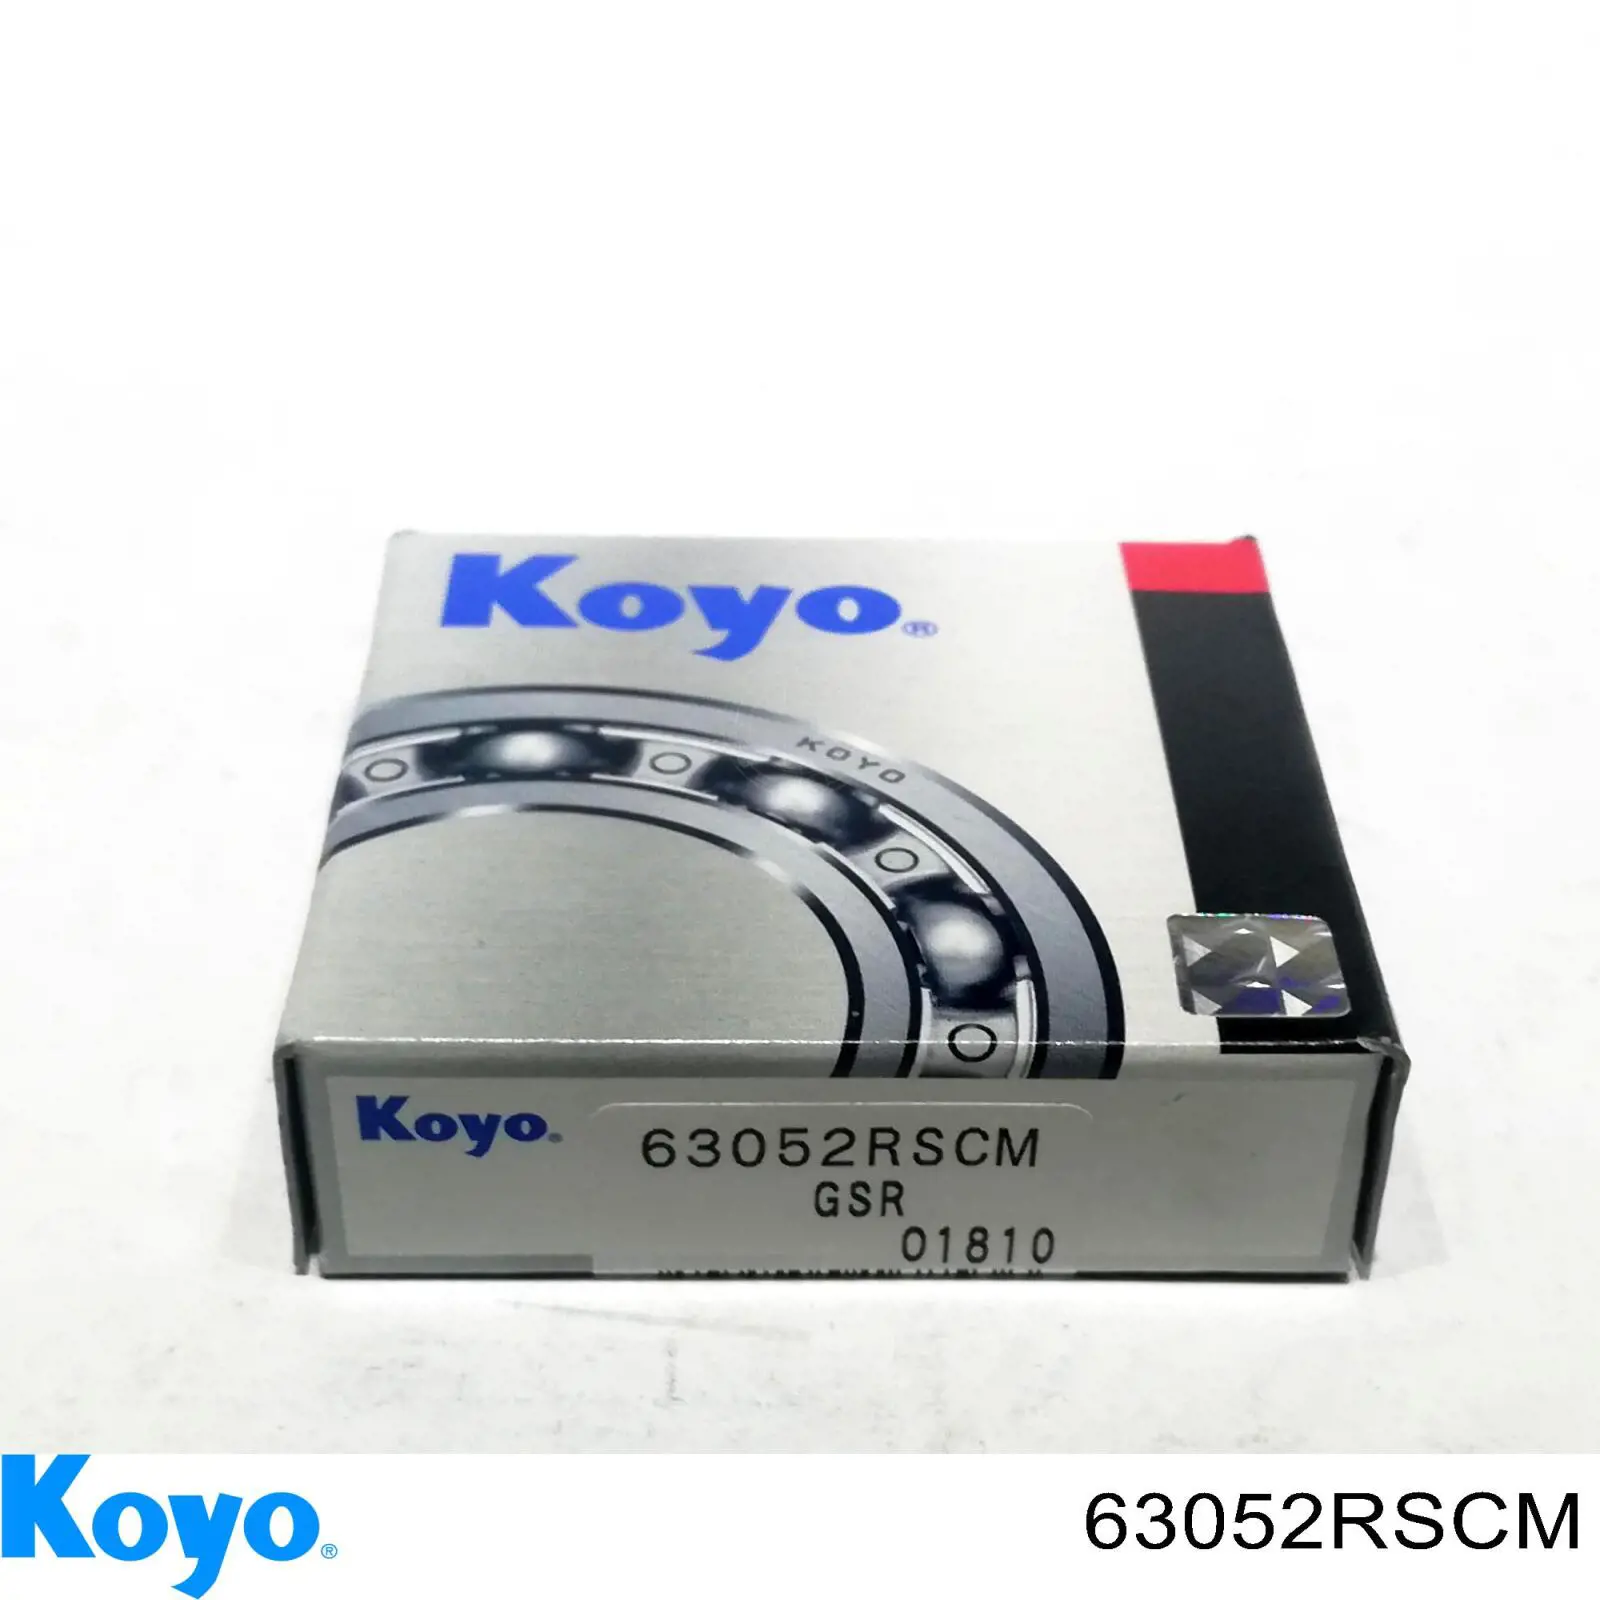 63052RSCM Koyo опорний підшипник первинного валу кпп (центрирующий підшипник маховика)